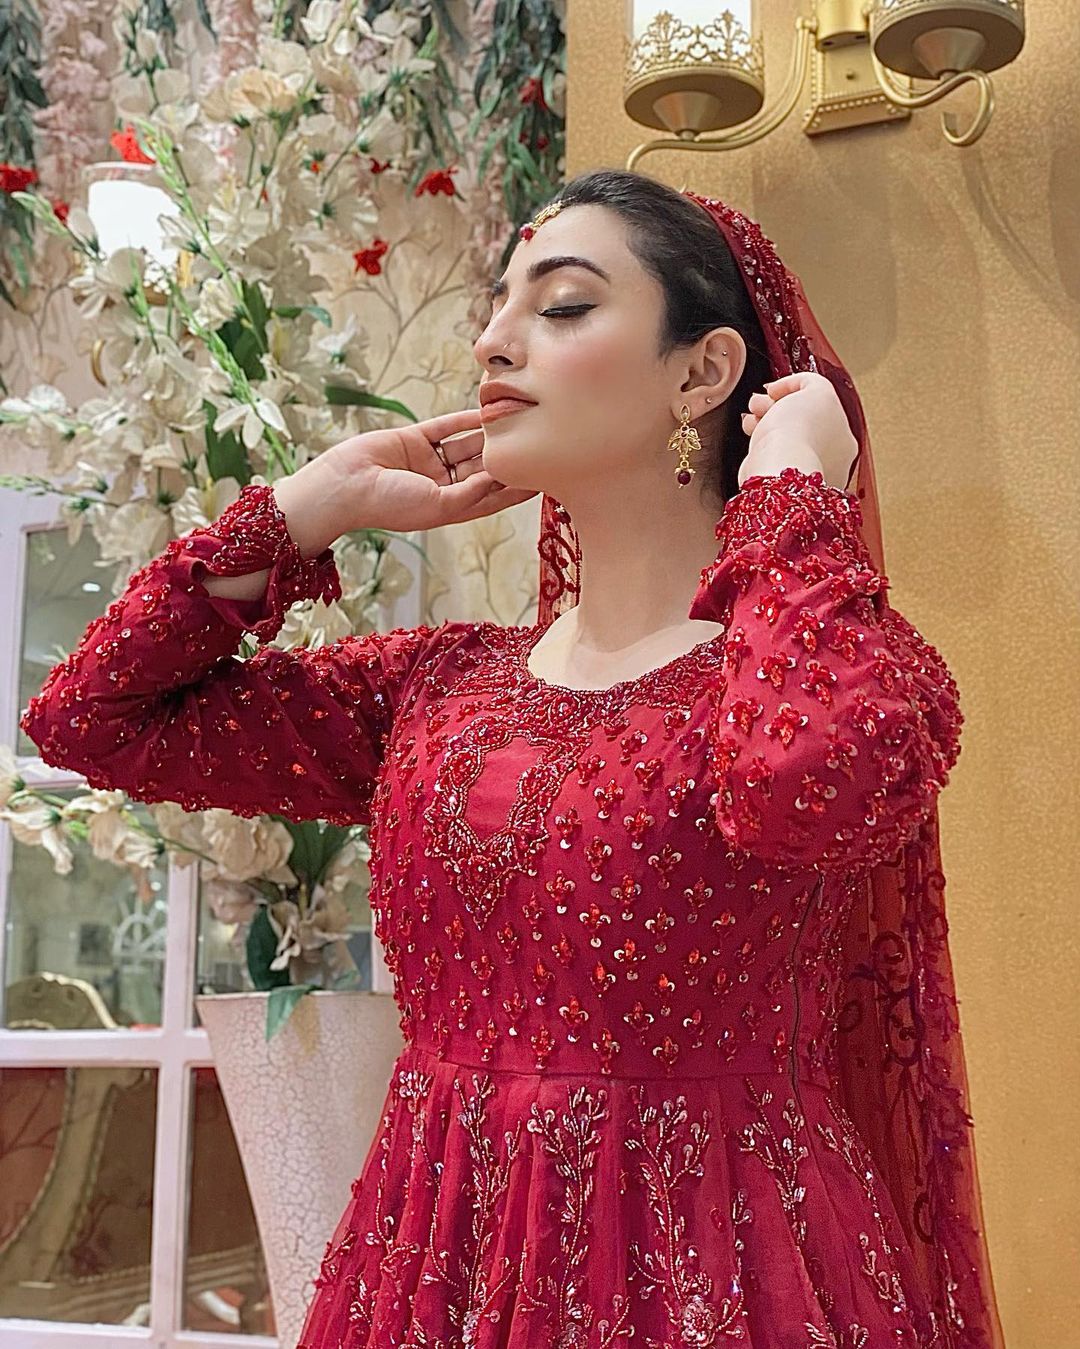 Nawal Saeed Looks Ravishing in a Scarlet Red Bridal Jora [Pictures] - Lens